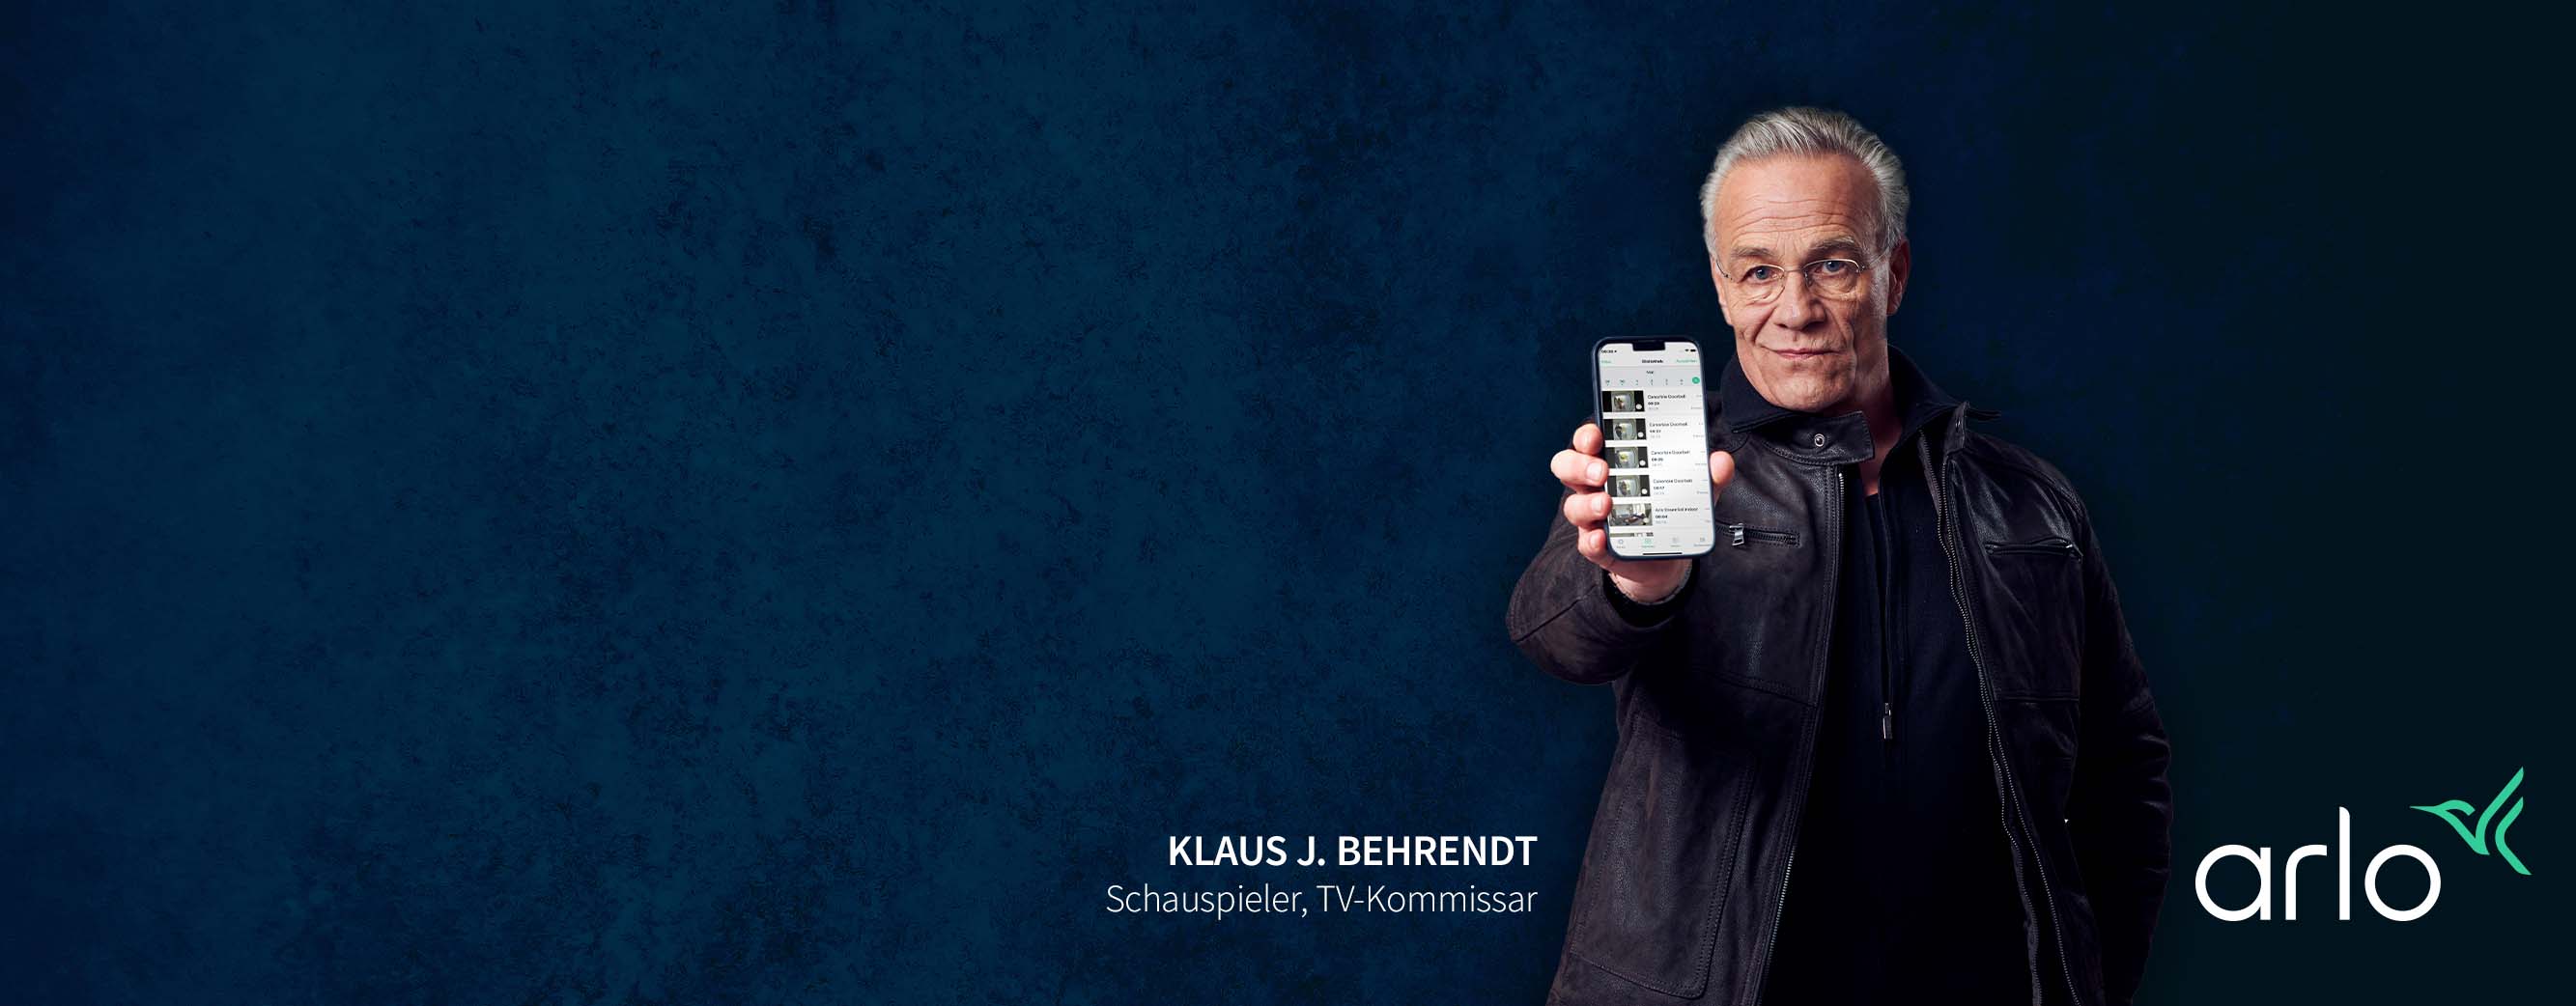 Klaus J. Behrendt zeigt die mehrfach ausgezeichnete Arlo App. Arlo von Experten Empfohlen